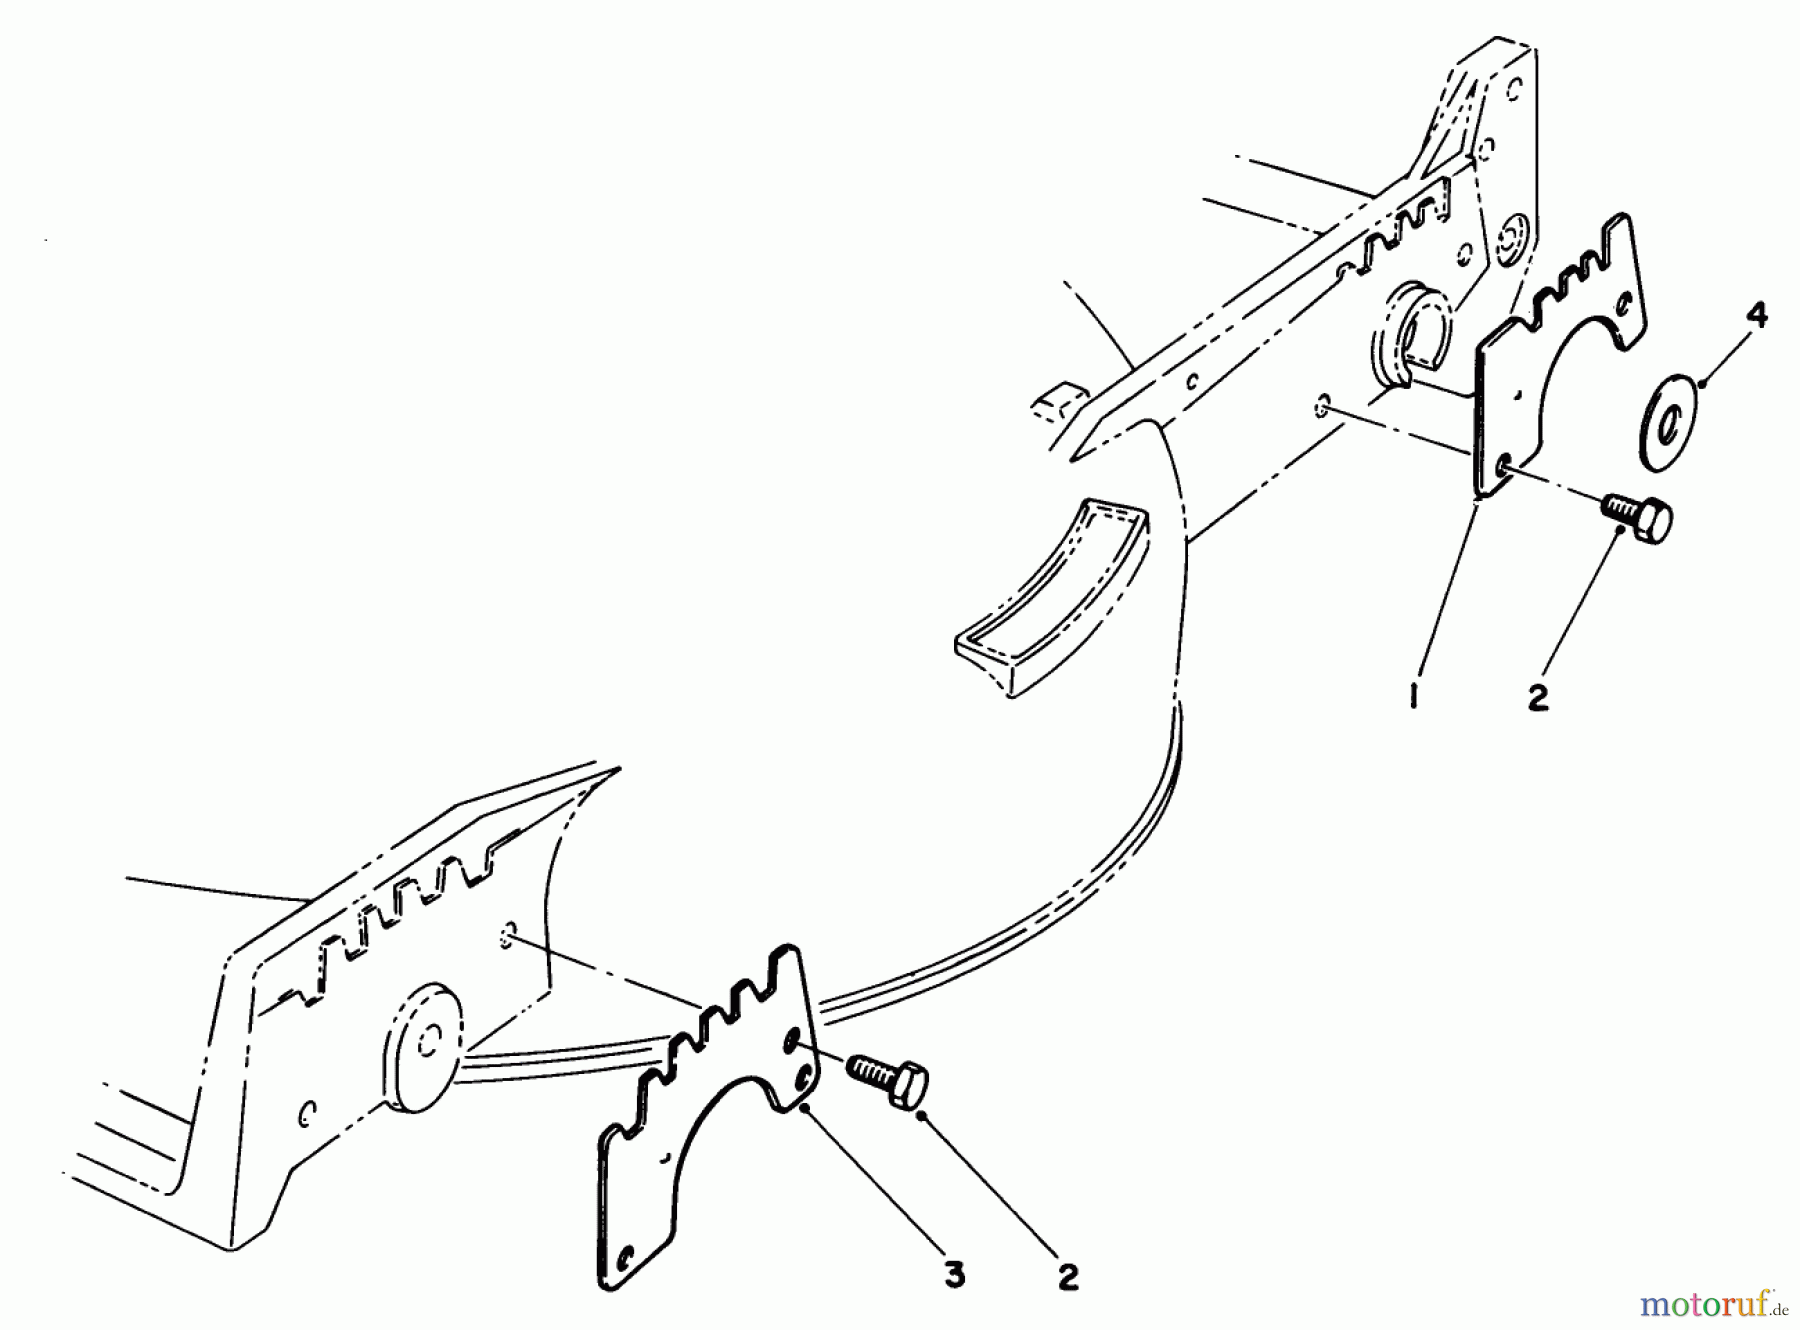  Toro Neu Mowers, Walk-Behind Seite 1 20718C - Toro Lawnmower, 1986 (6000001-6999999) WEAR PLATE KIT NO. 49-4080 (OPTIONAL)